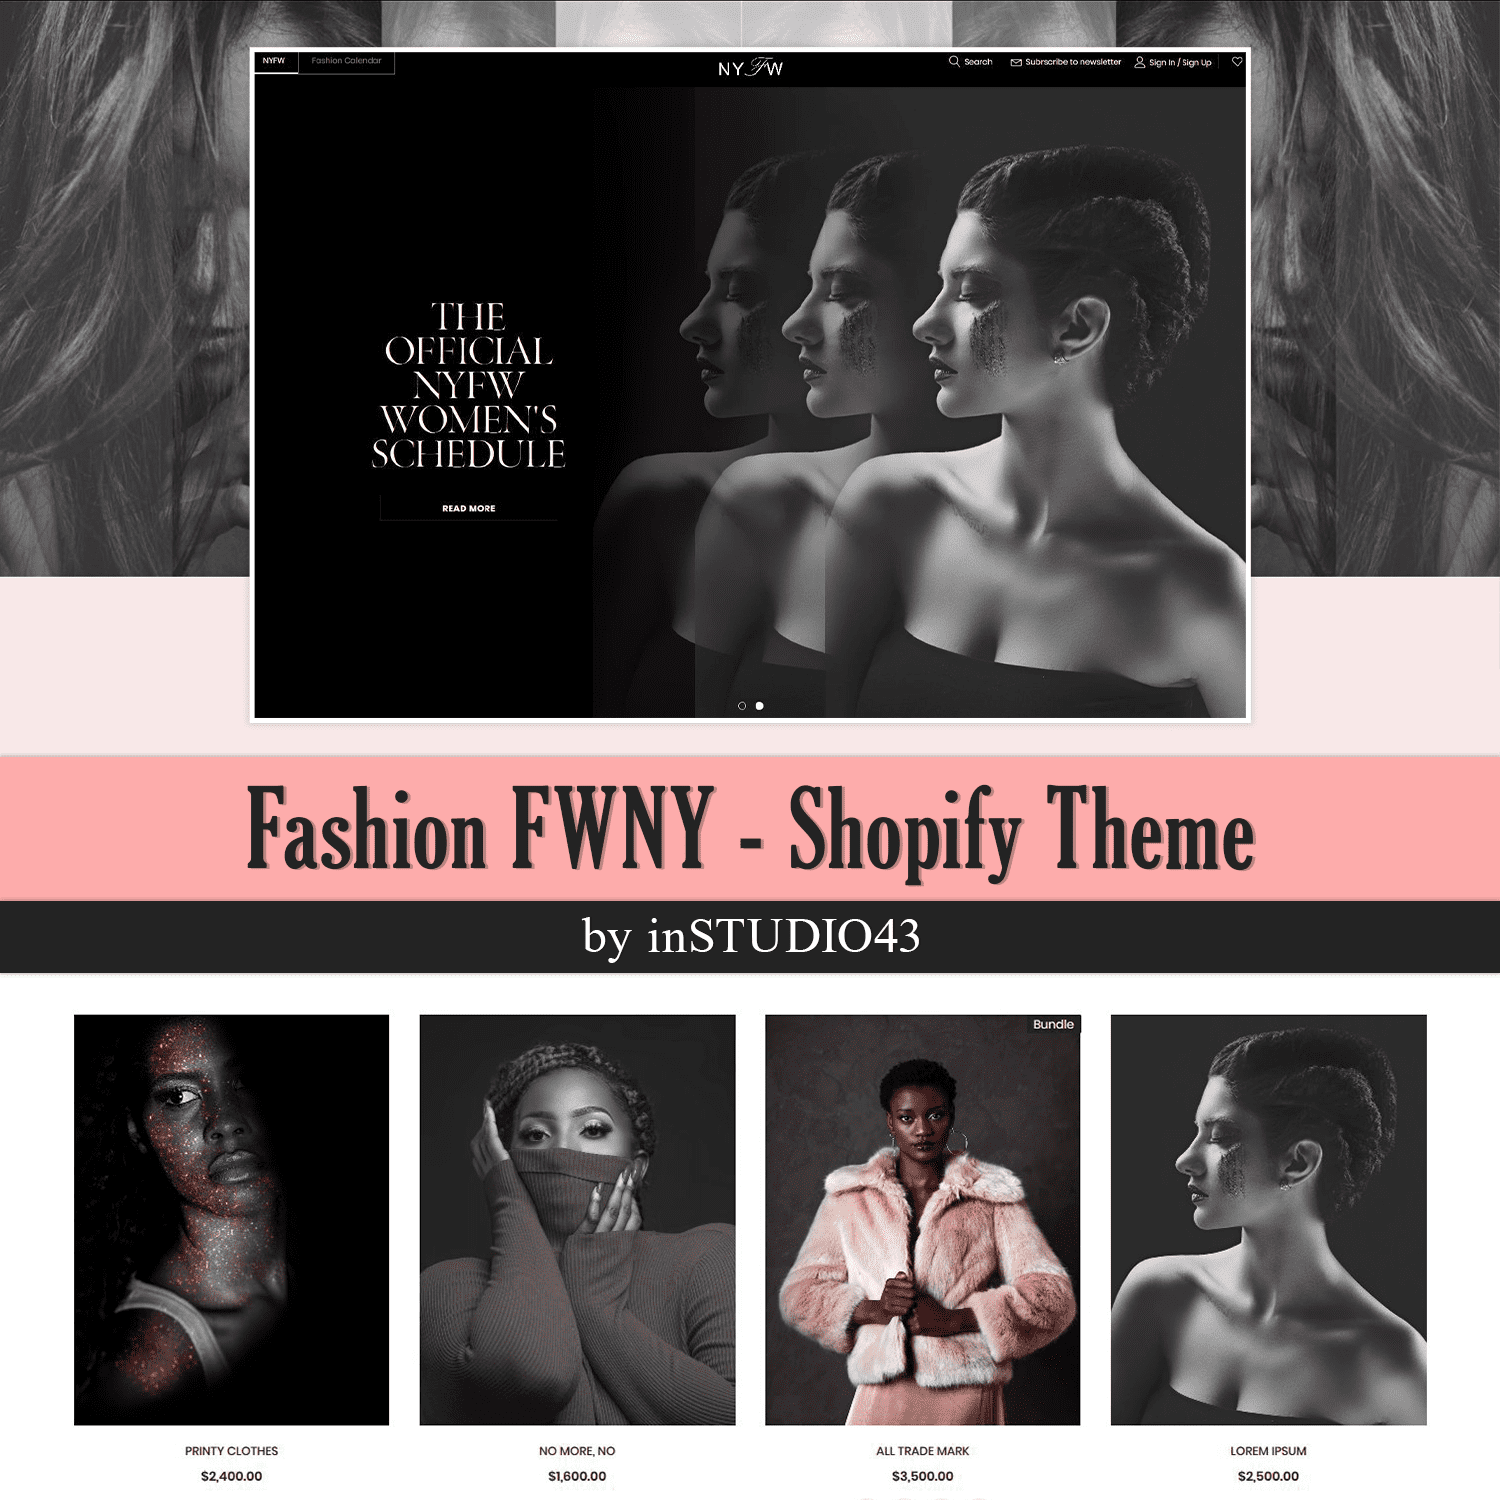 Fashion FWNY - Shopify Theme.